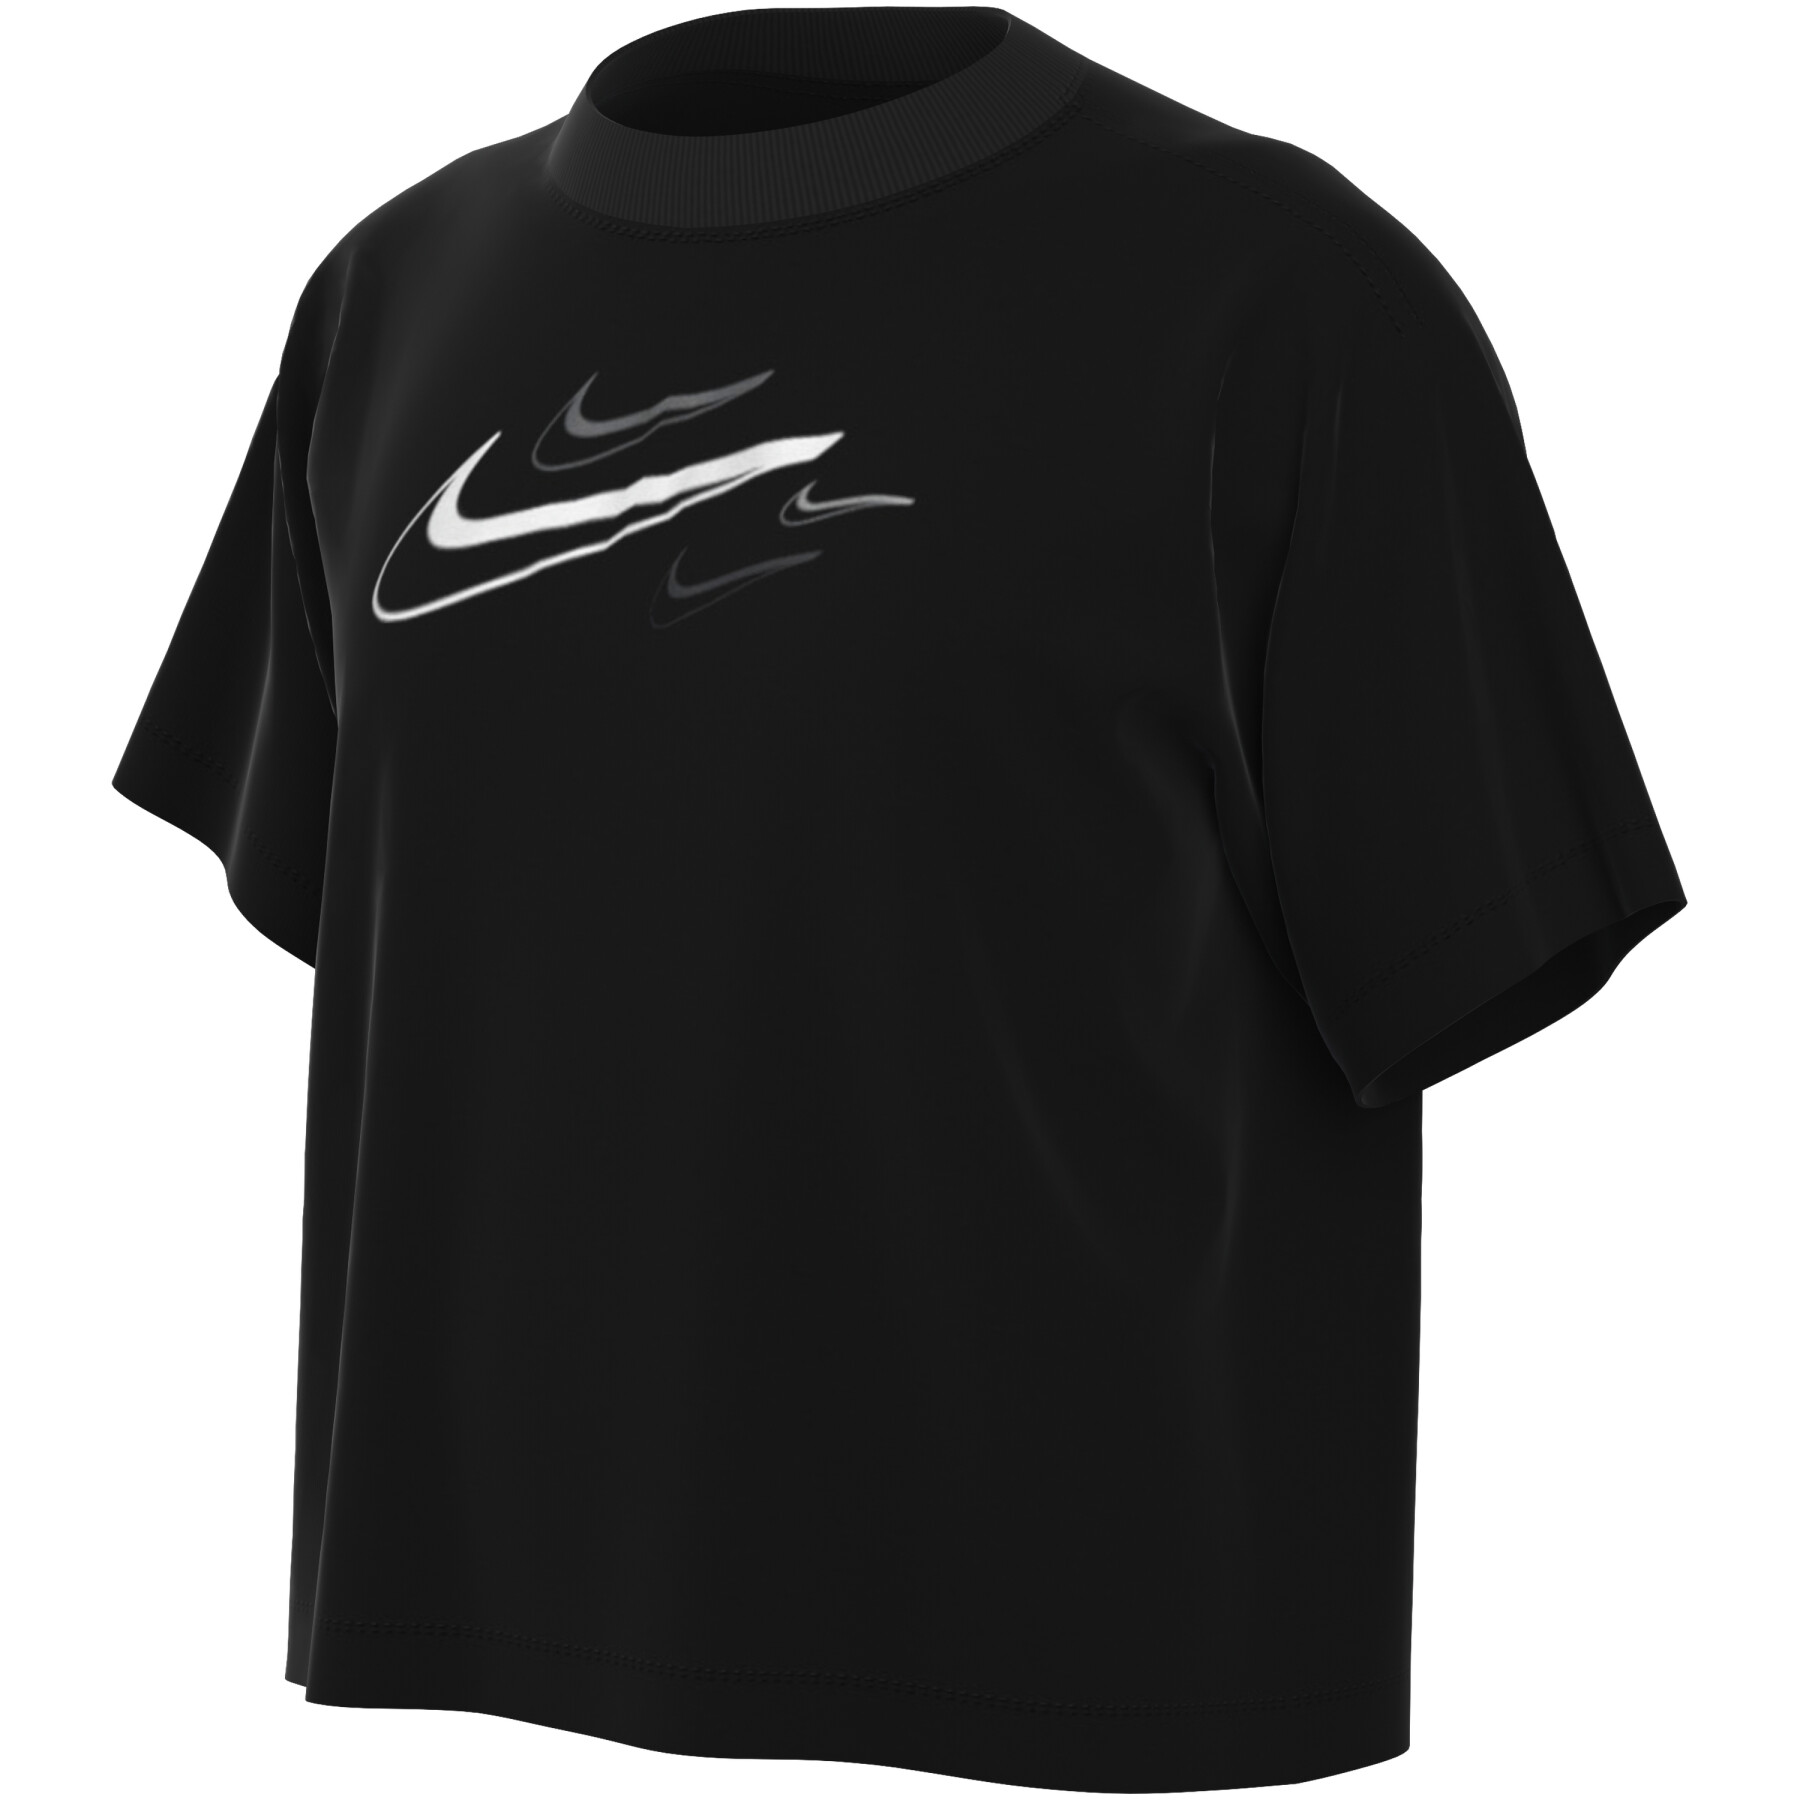 Maglietta morbida per ragazze Nike Swoosh